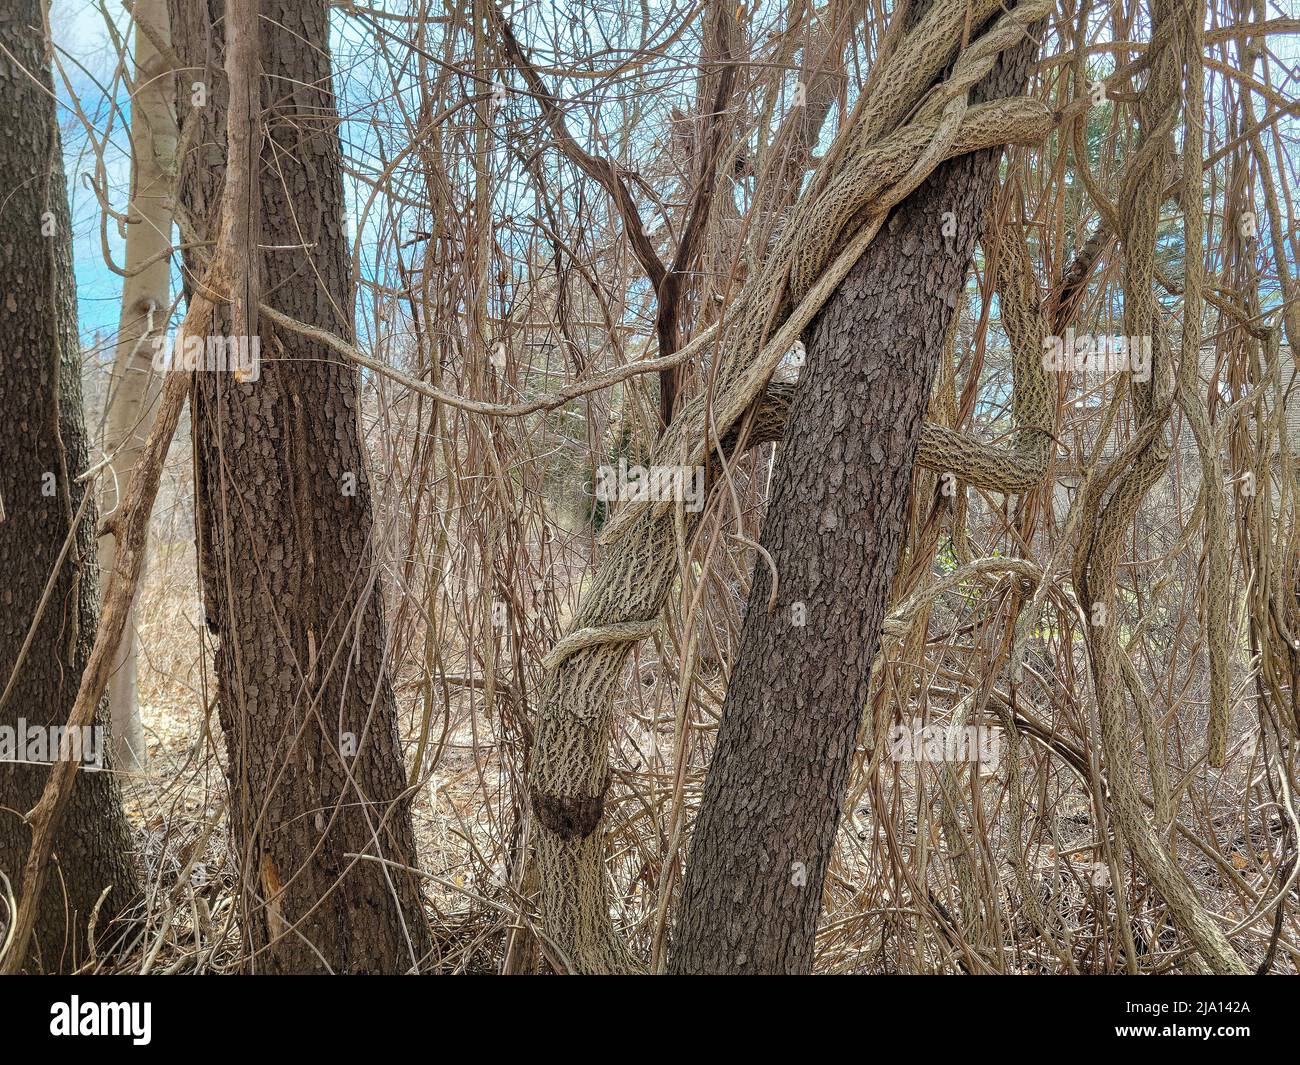 Vid retorcida envuelta alrededor de un tronco de árbol en bosques de primavera Foto de stock